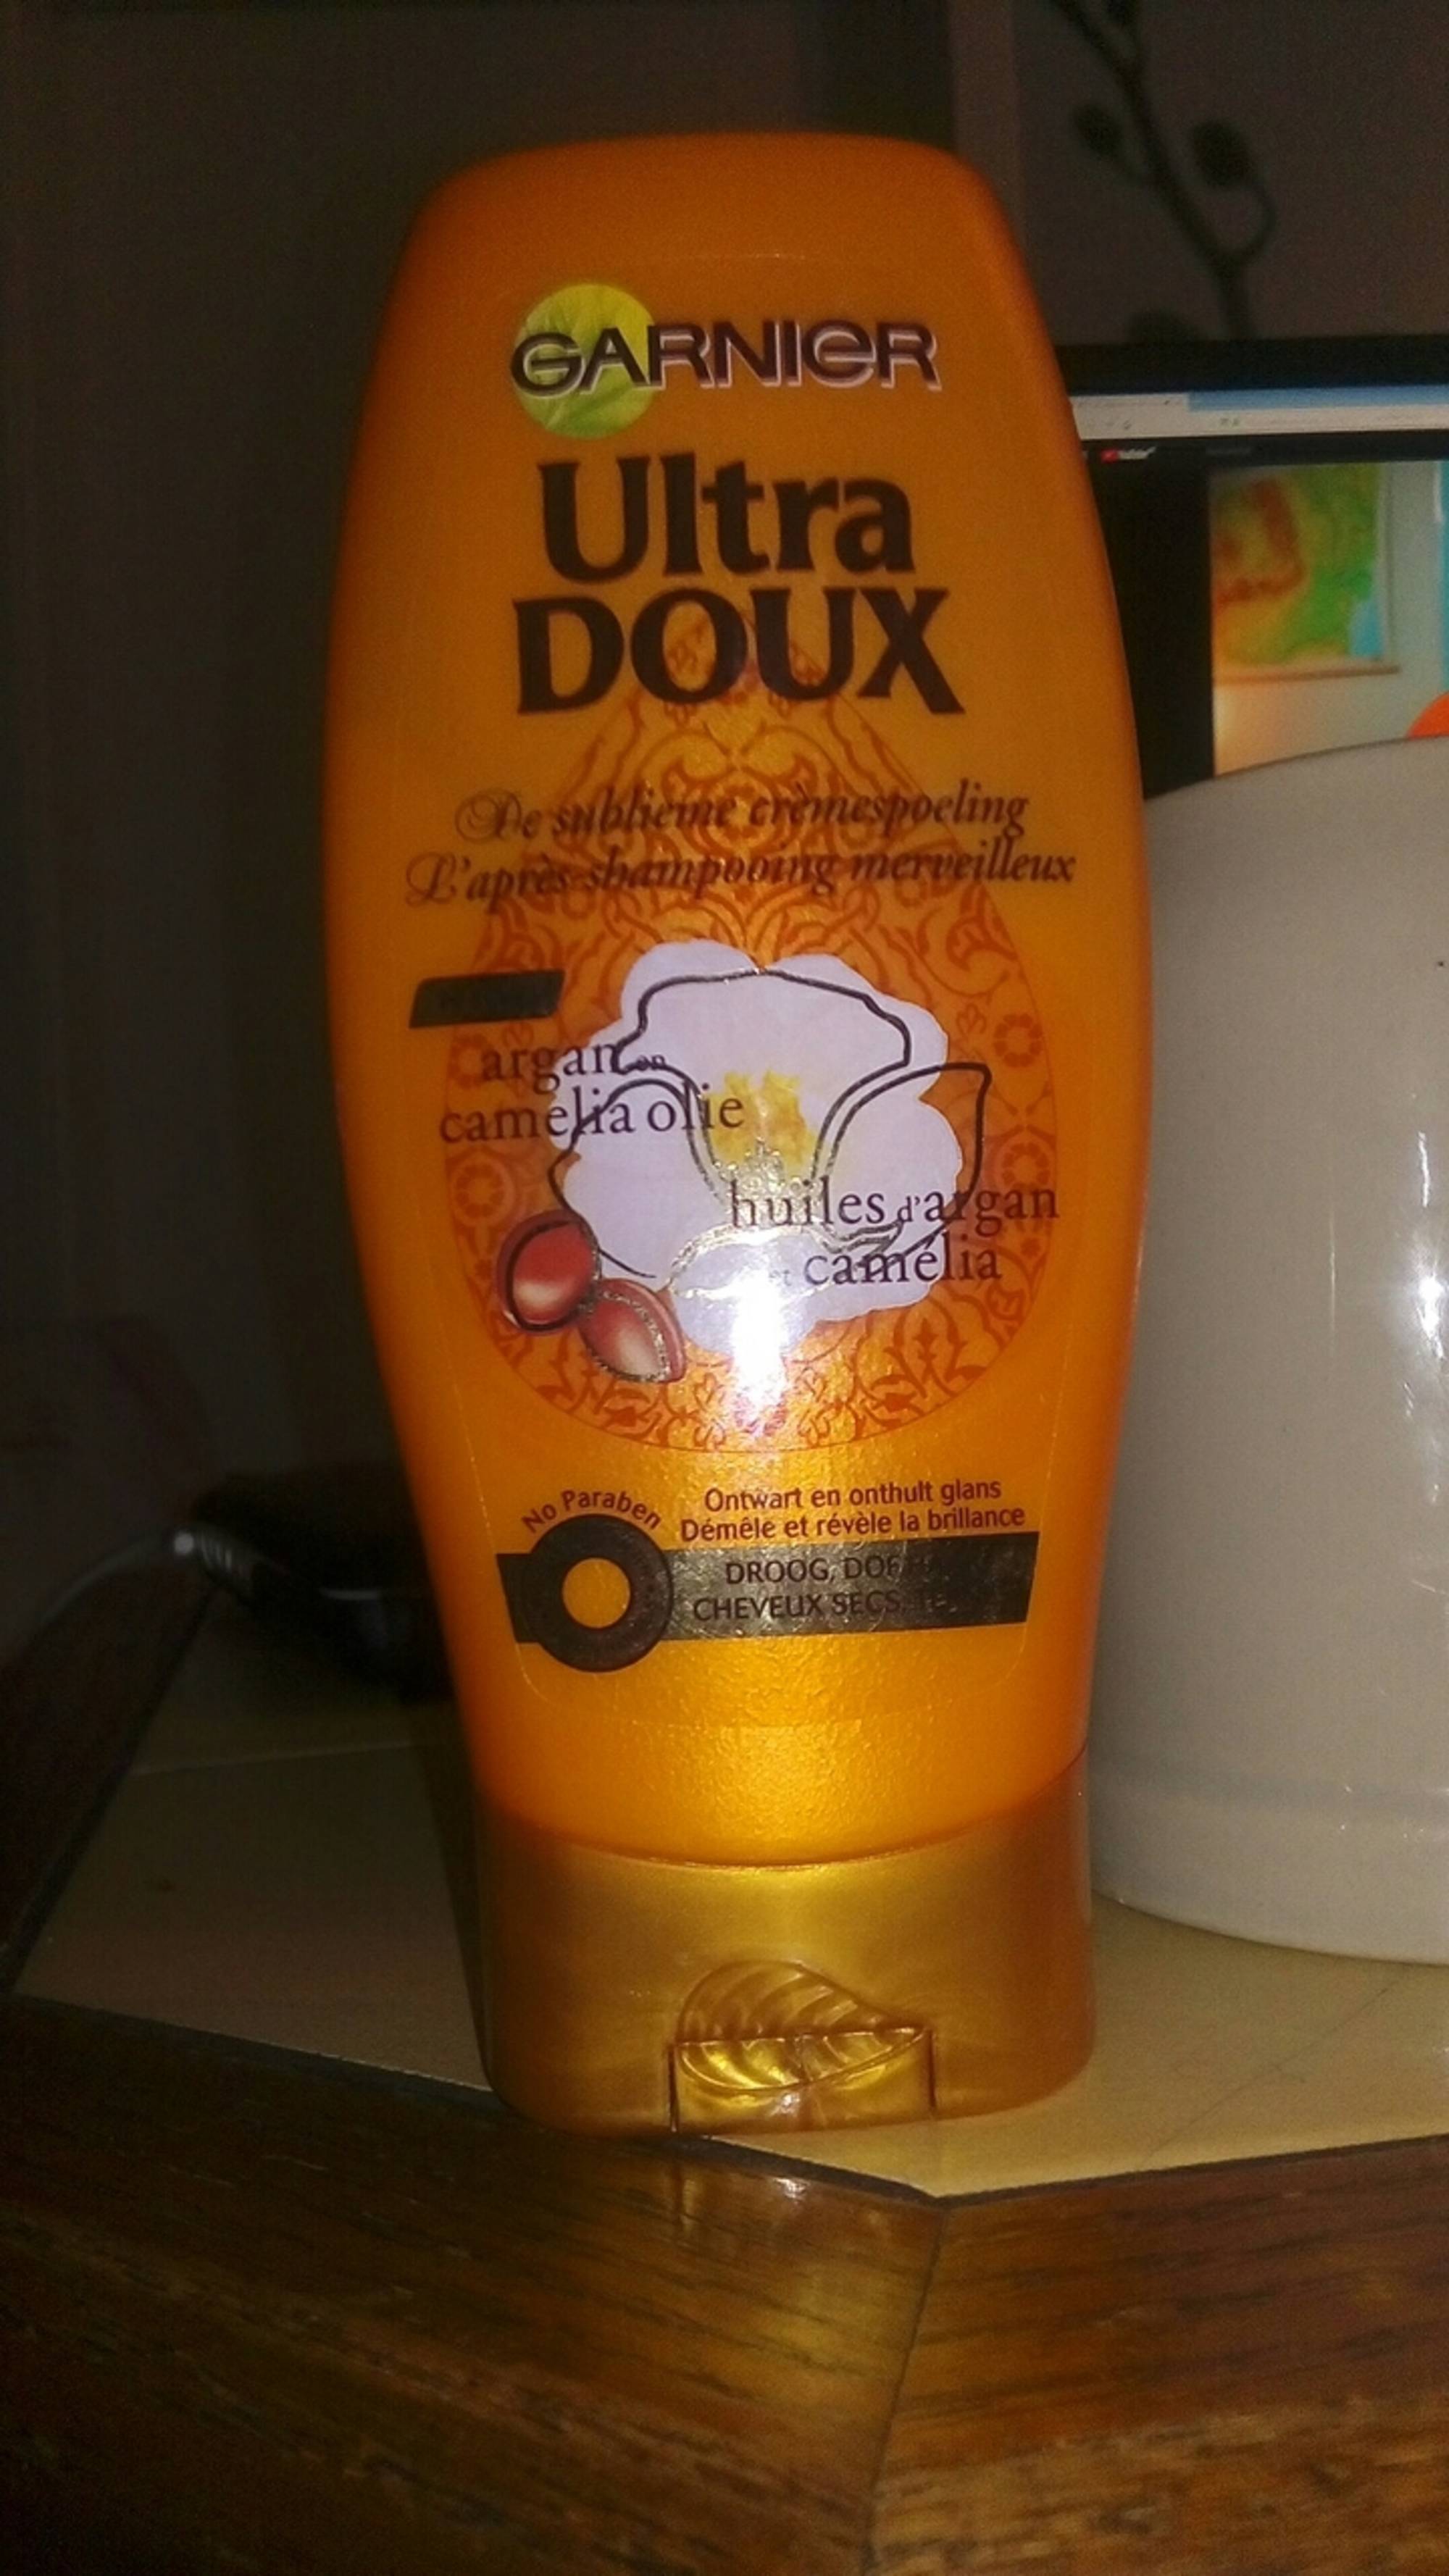 GARNIER - Ultra doux - L'après shampooing merveilleux